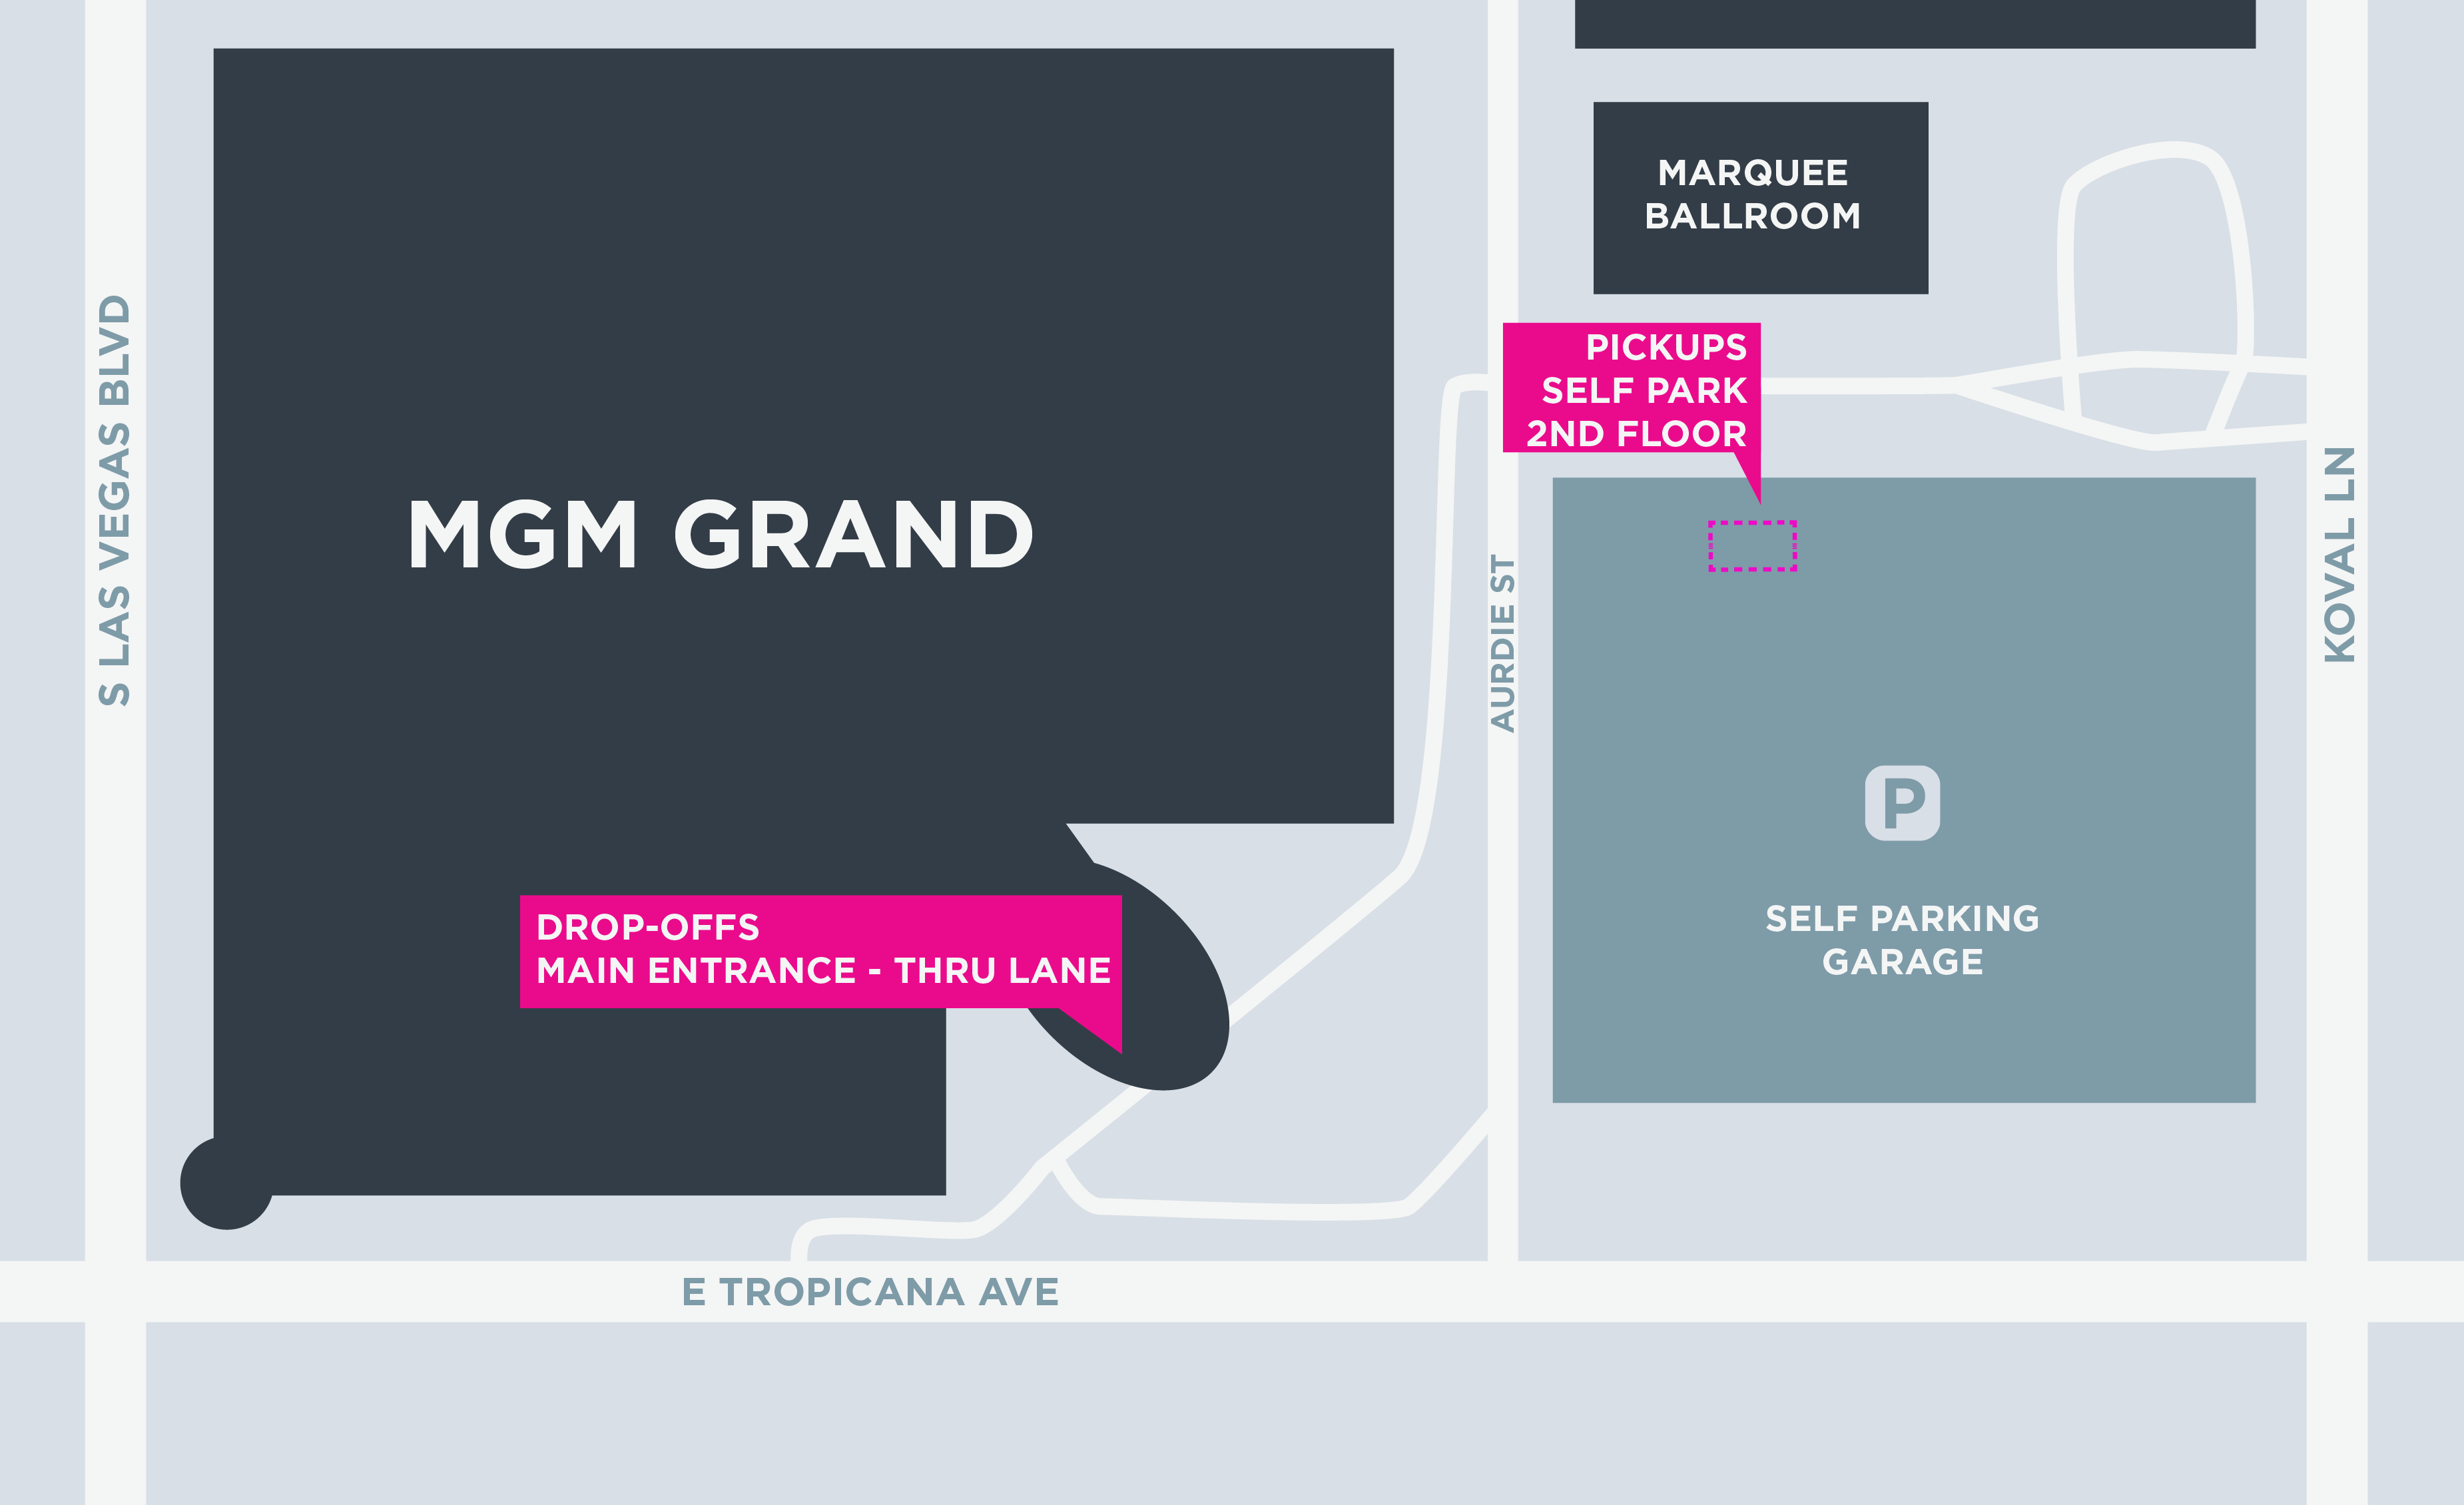 Plan des zones de départ et d'arrivée au MGM Grand à Las Vegas.